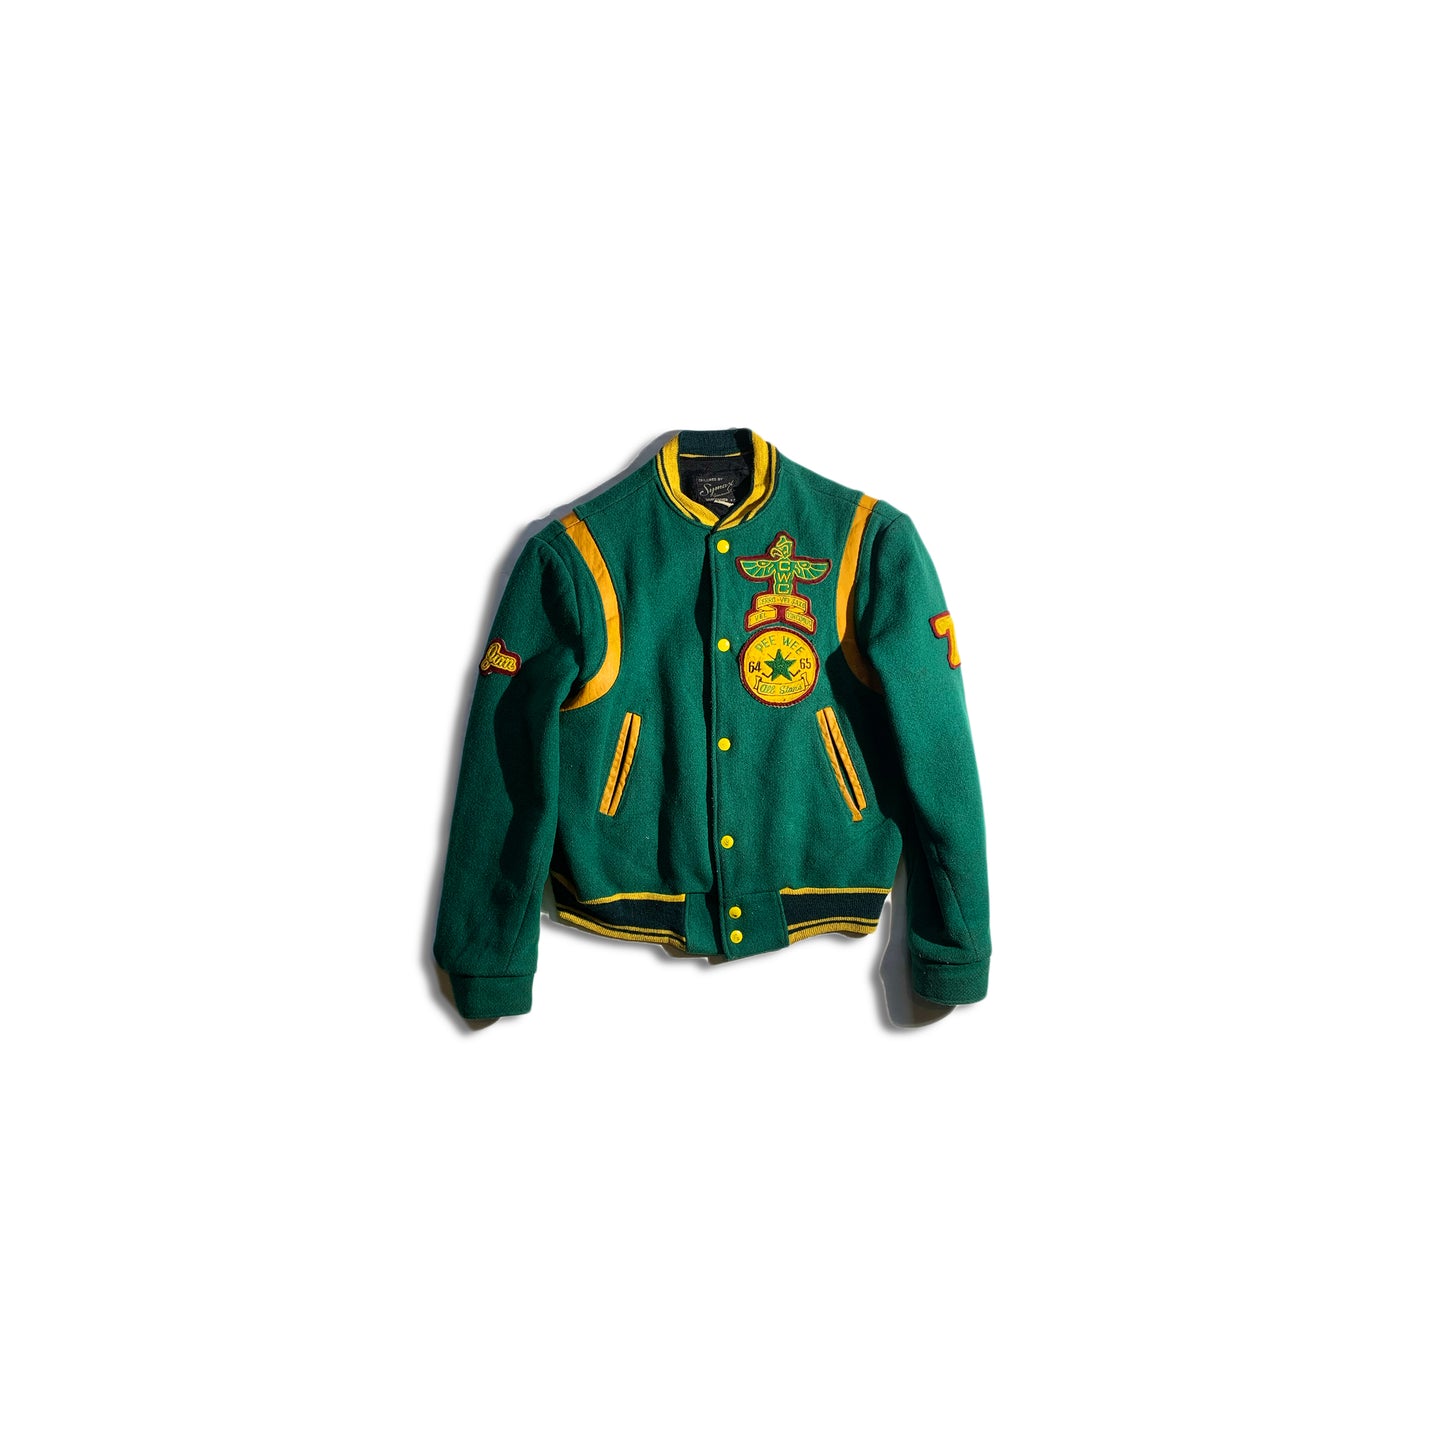 Vintage Green Team Bomber Jacket 1960s